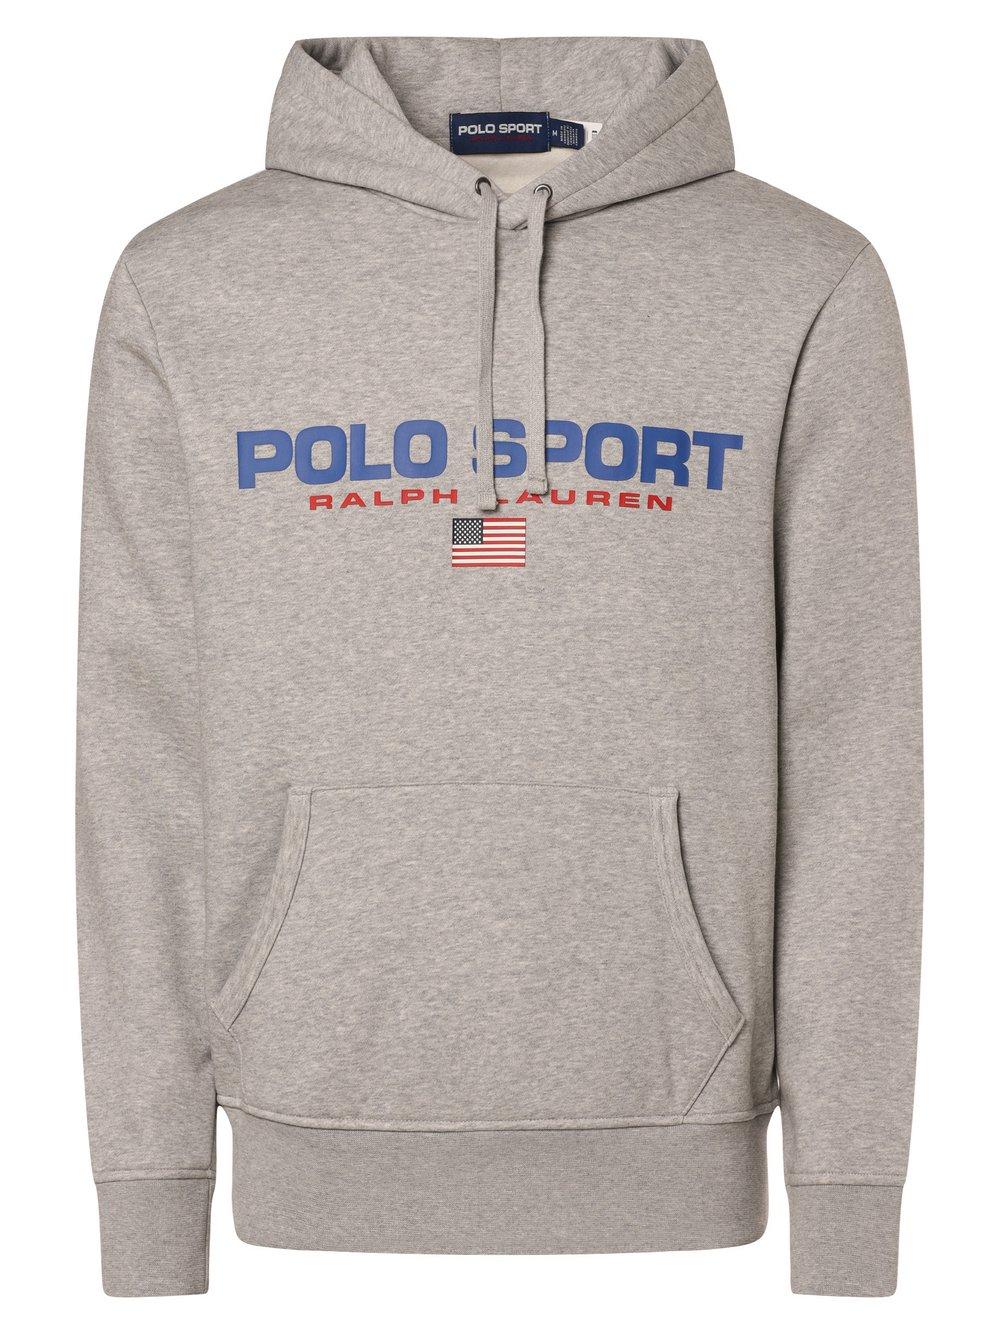 Polo Sport Kapuzenpullover Herren Baumwolle bedruckt, grau von Polo Sport Ralph Lauren